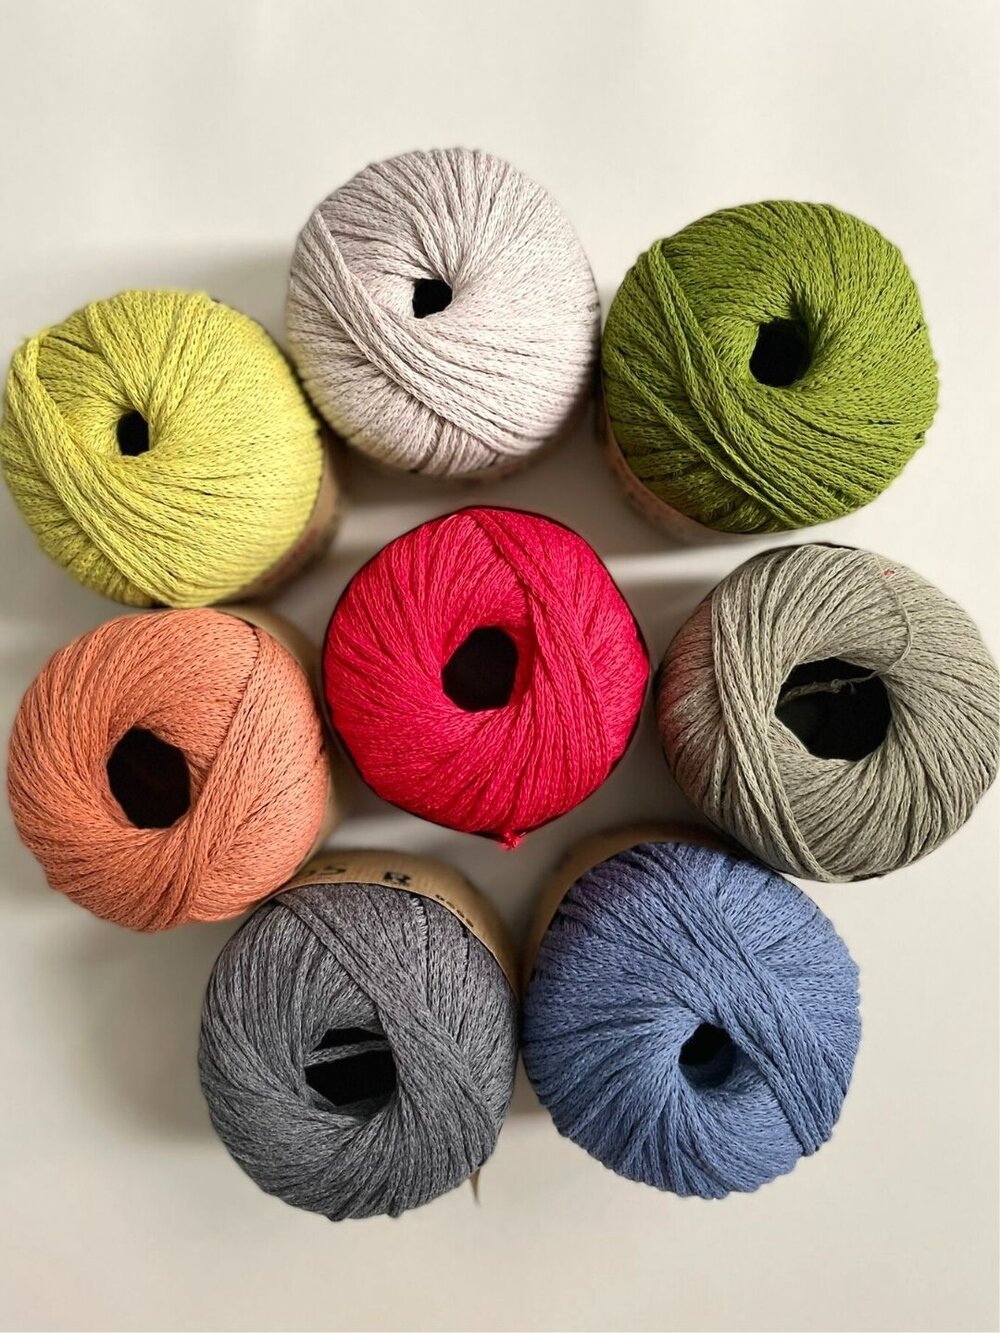 Kit de Crochet Zero Waste Cesta para el Pan - Katia